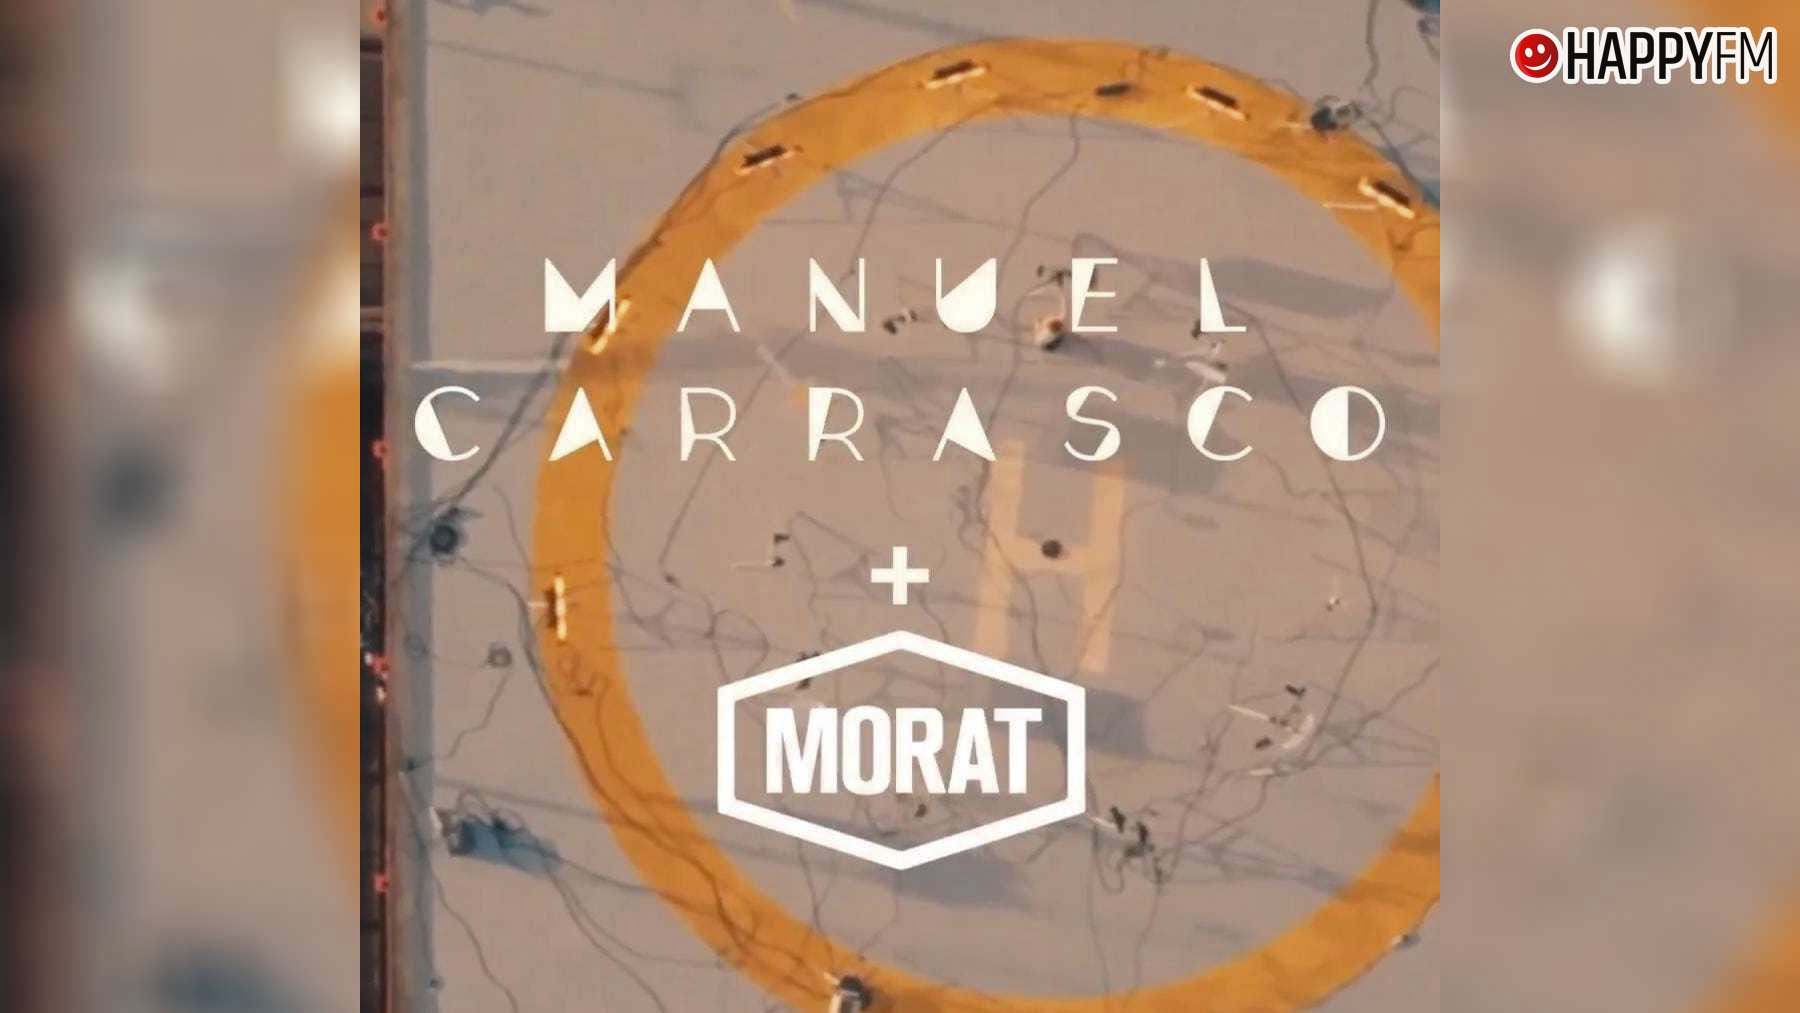 ‘Hasta por la mañana’, de Manuel Carrasco y Morat: letra y vídeo